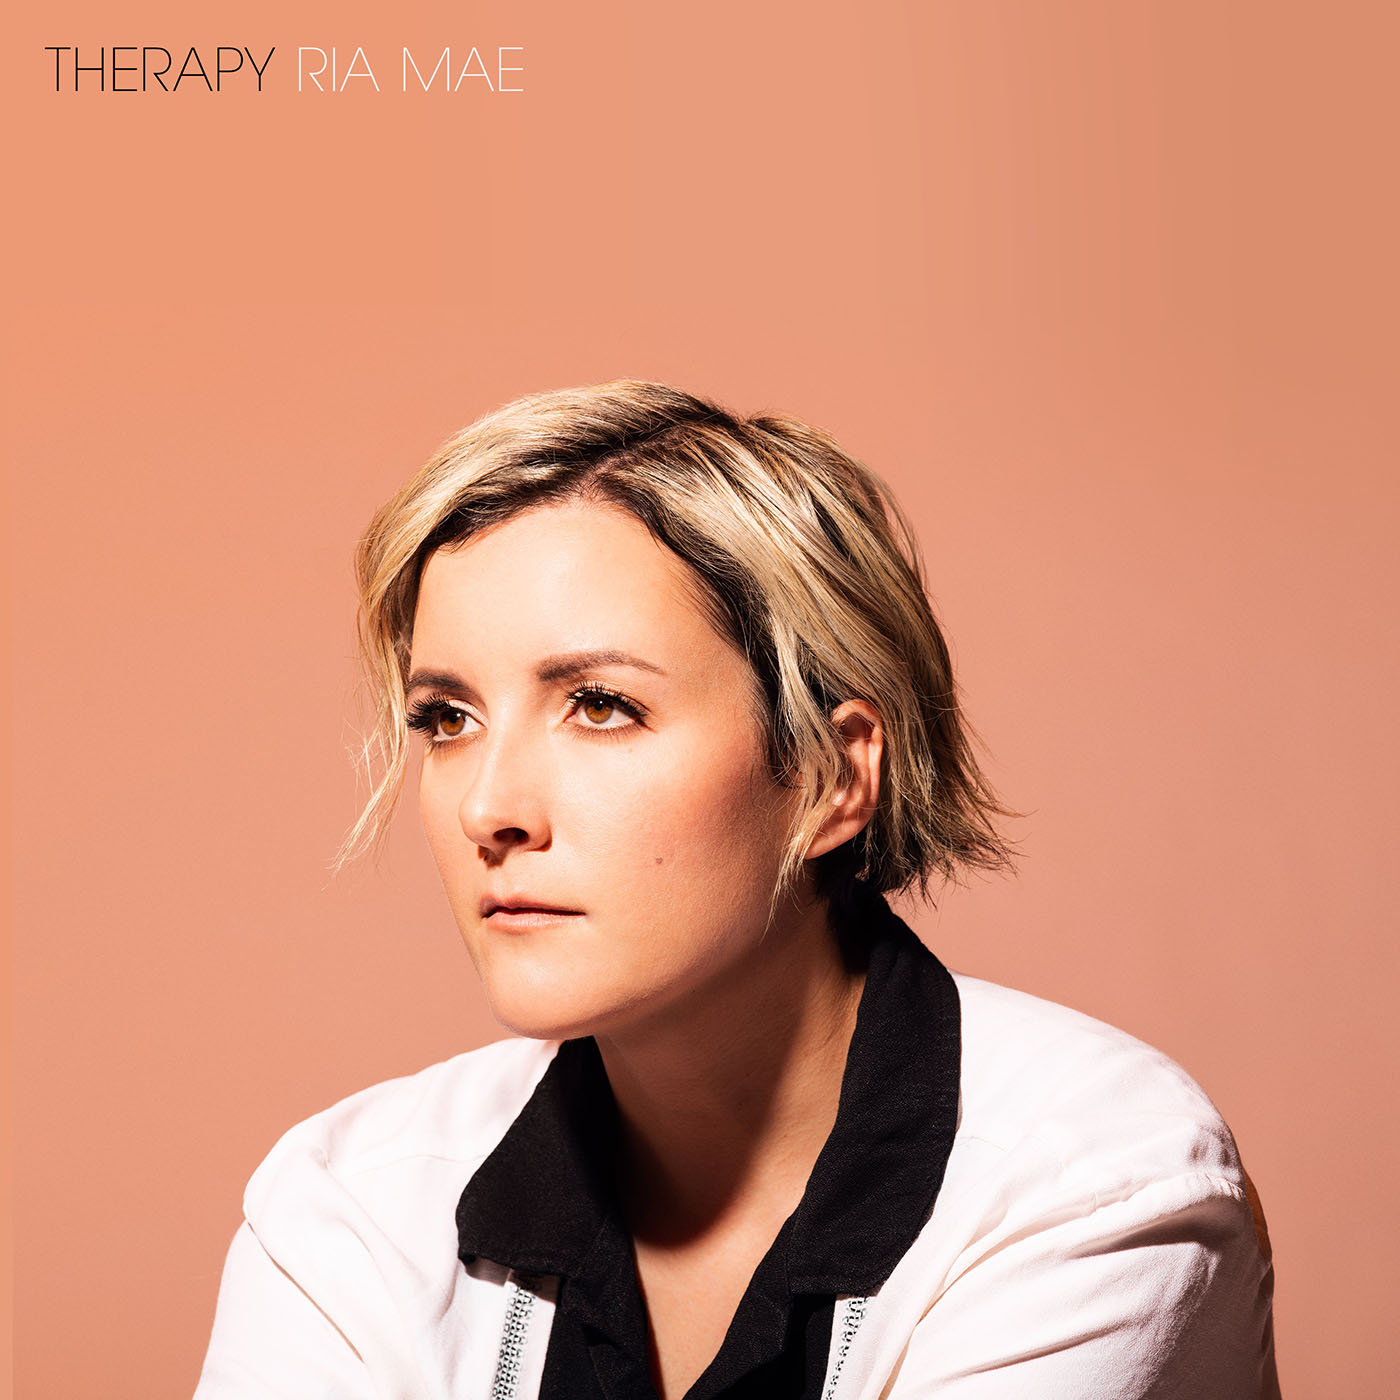 Ria Mae album cover art for Therapy